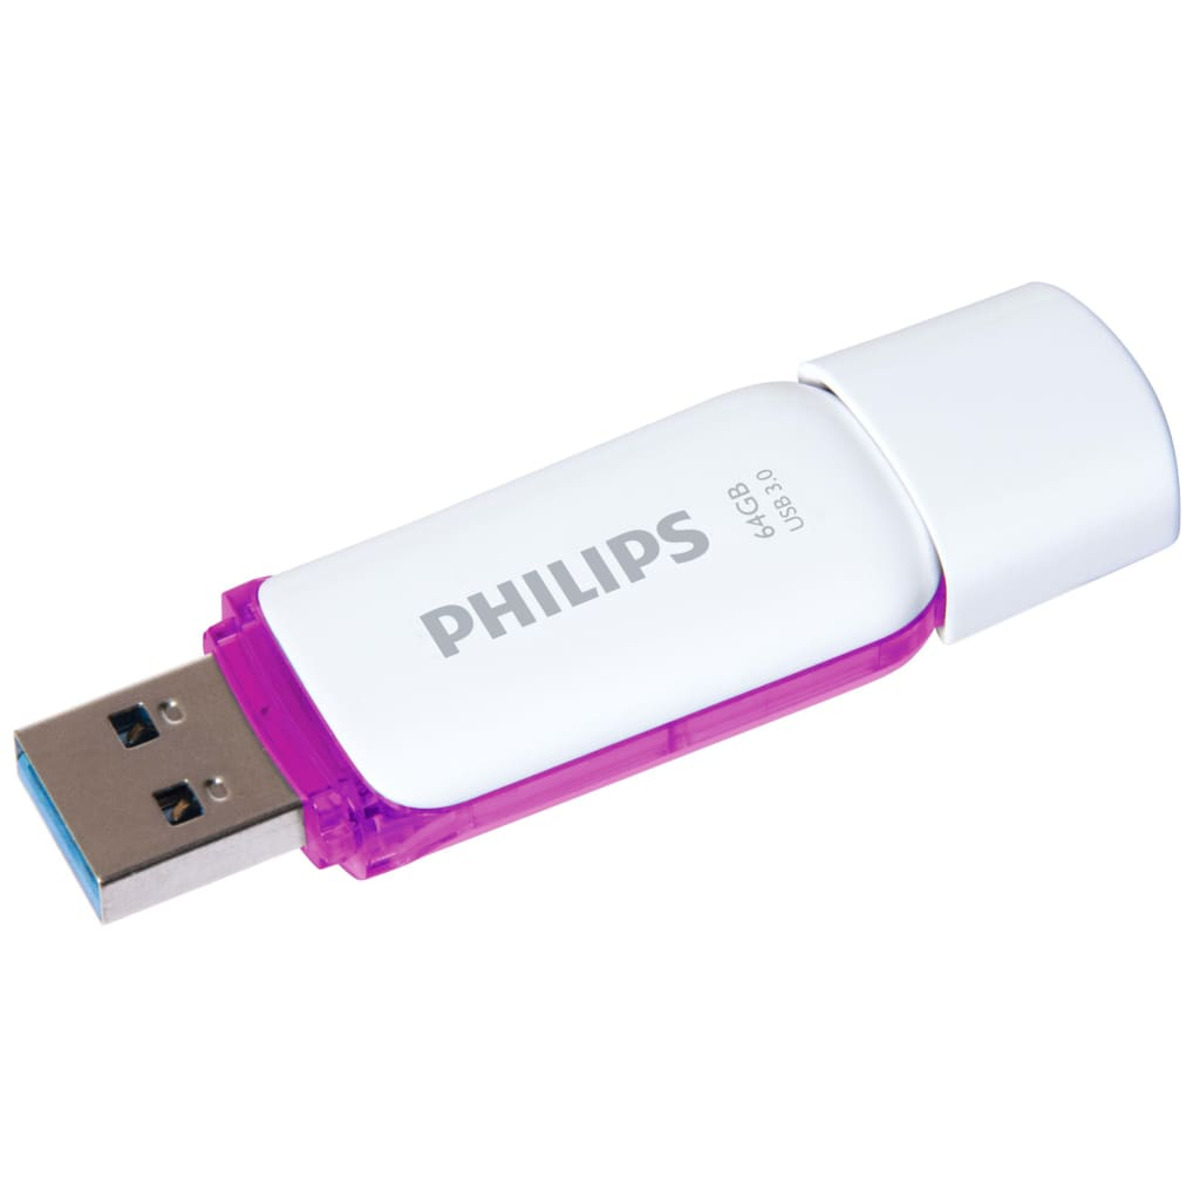 PHILIPS 433987 Violett, USB-Flash-Laufwerk GB) (Weiß und 64